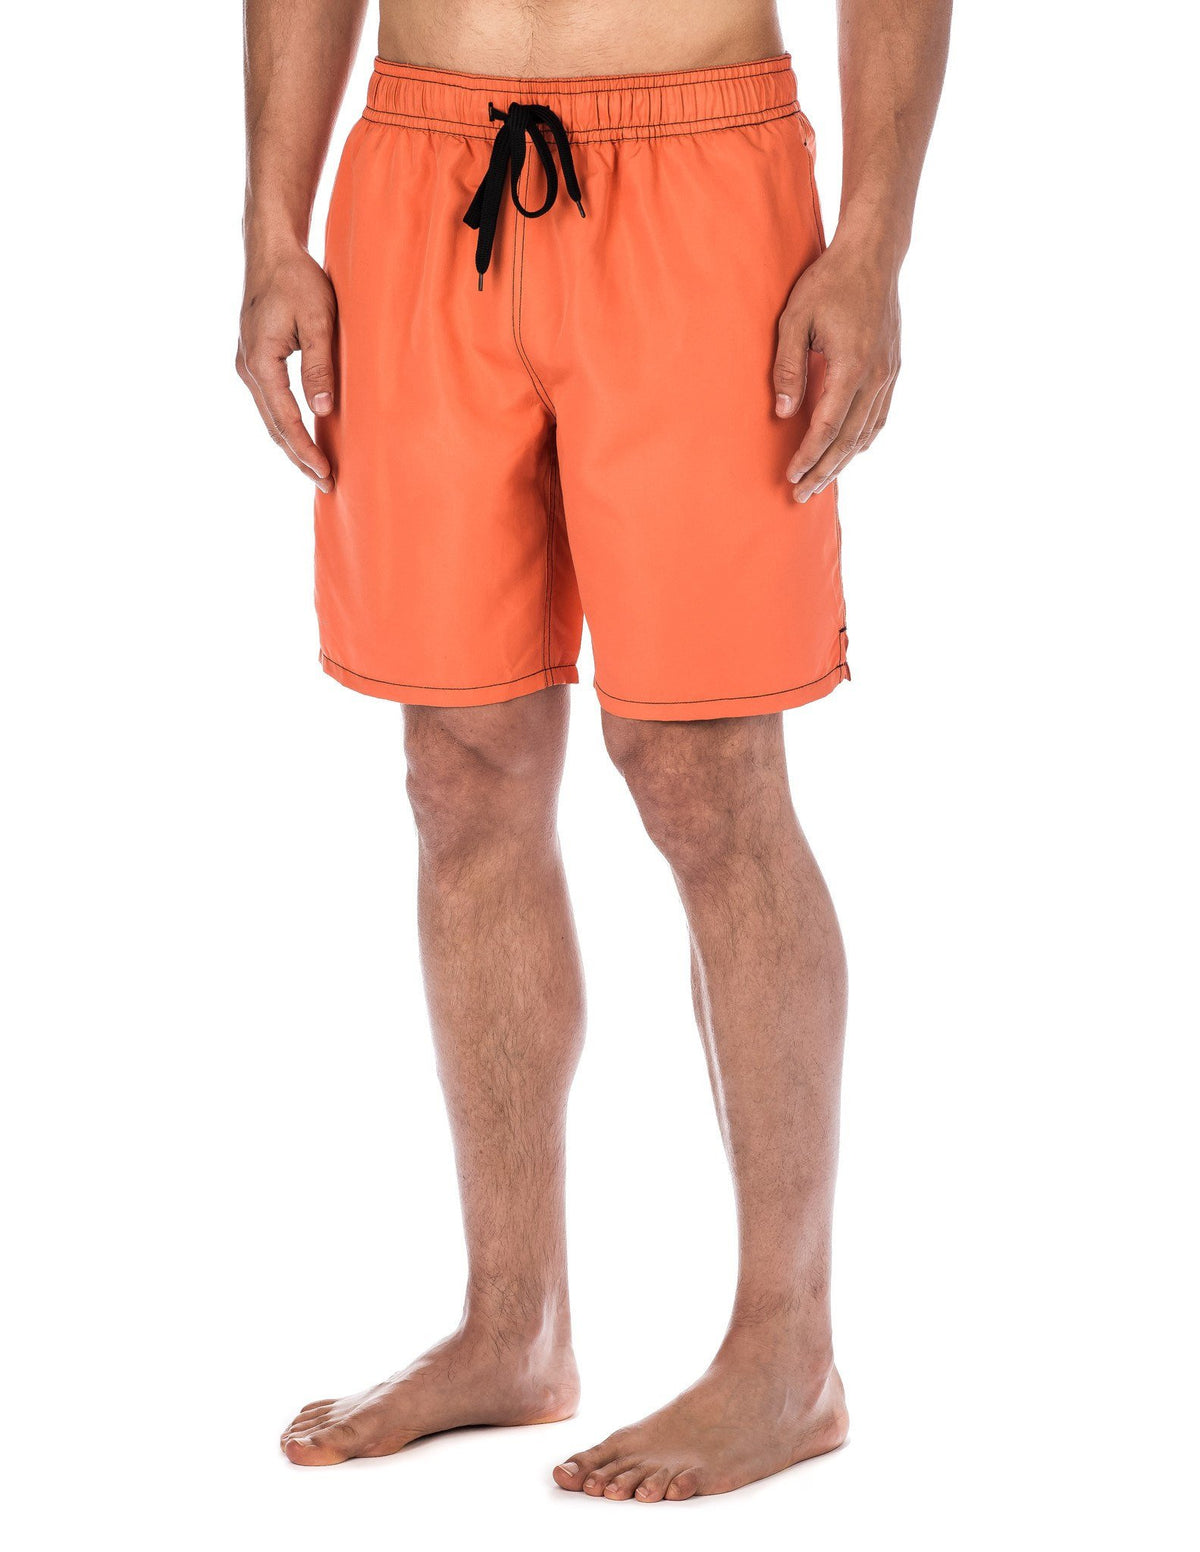 Men's Premium Swim Trunks - Orange/Black